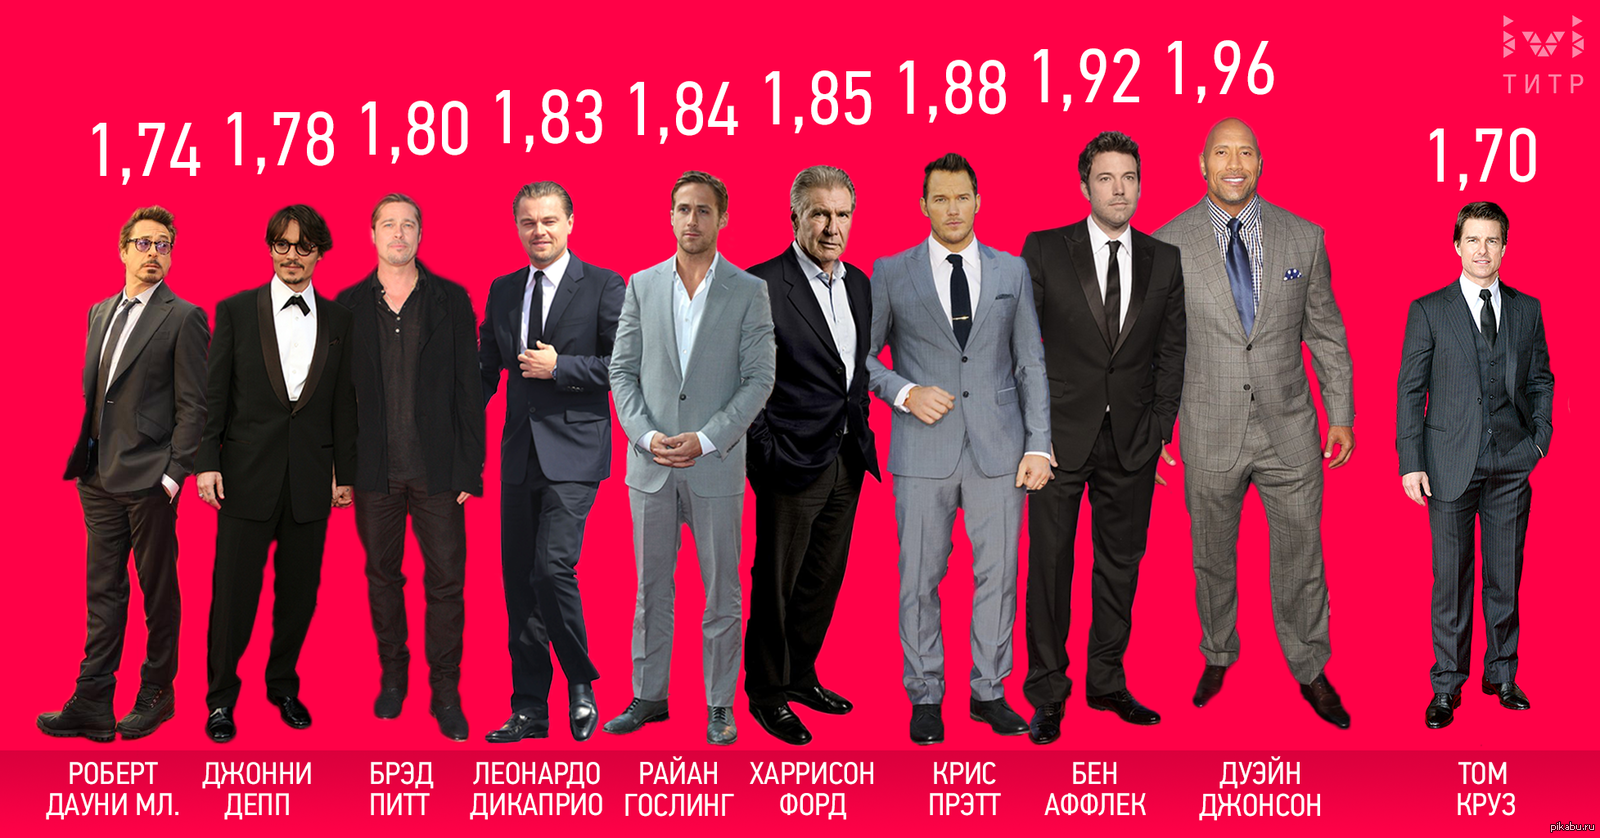 5 рост мужчины. Рост знаменитостей мужчин. Сравнение роста актеров. Рост актеров Голливуда.